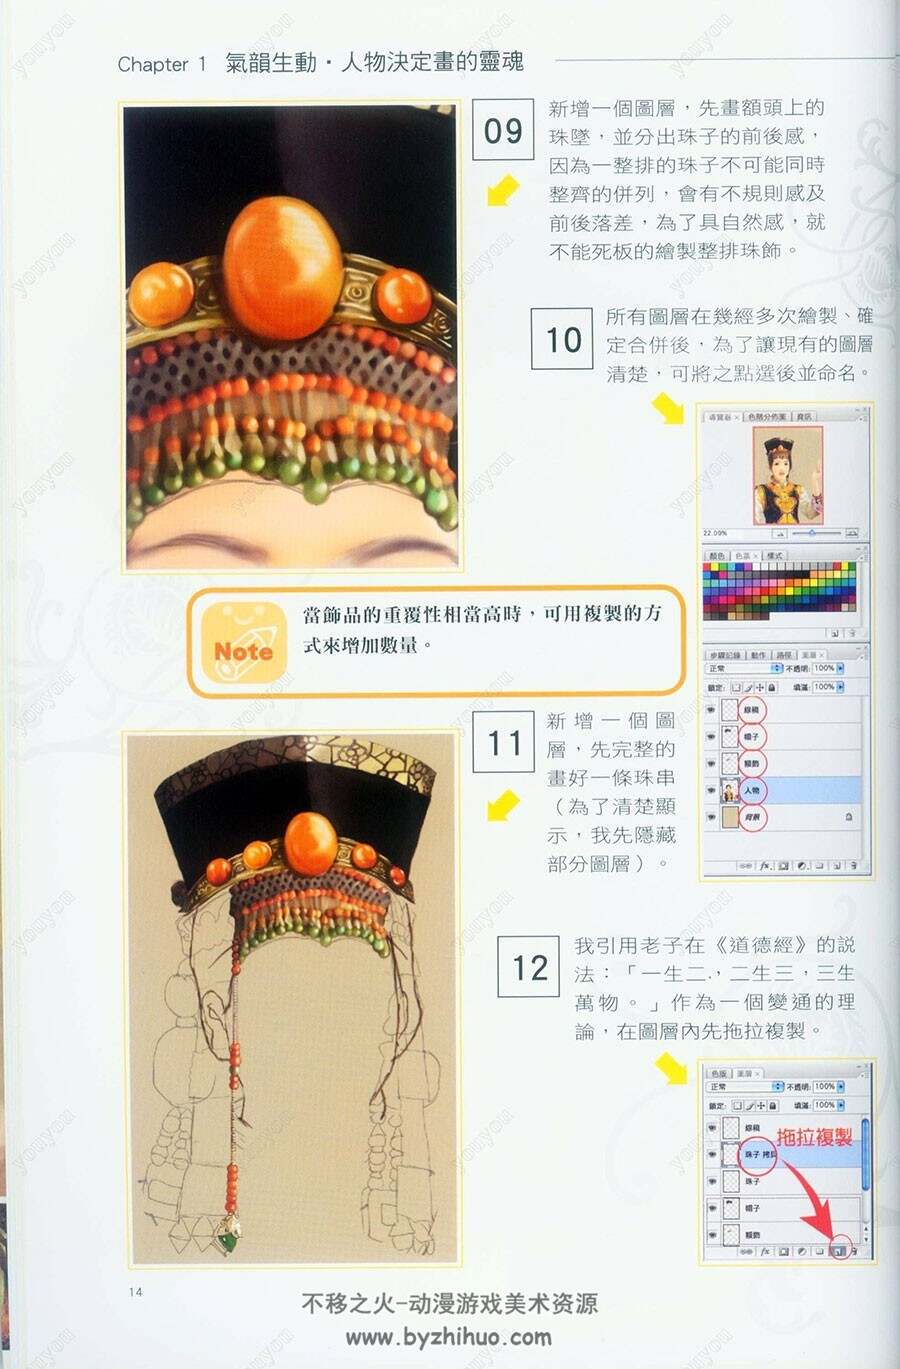 德珍CG彩绘教室2 中国仕女绘画专书进阶版 古风插画绘制教程